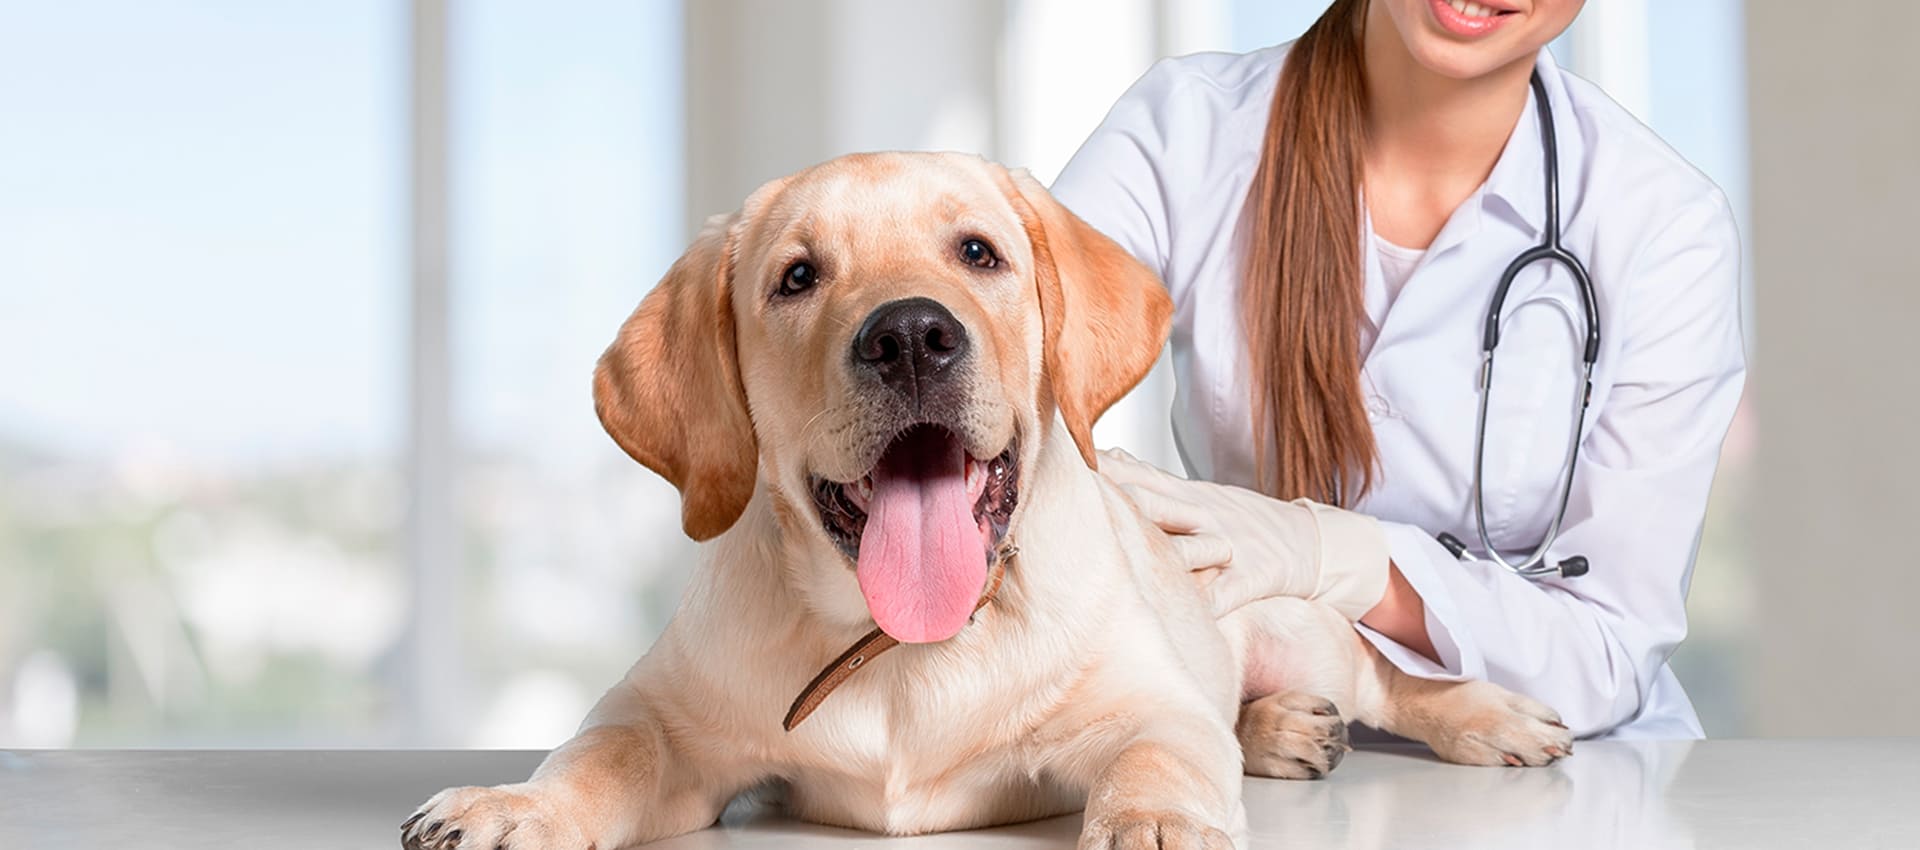 Токсокароз у собак: причины, симптомы, диагностика, лечение, осложнения